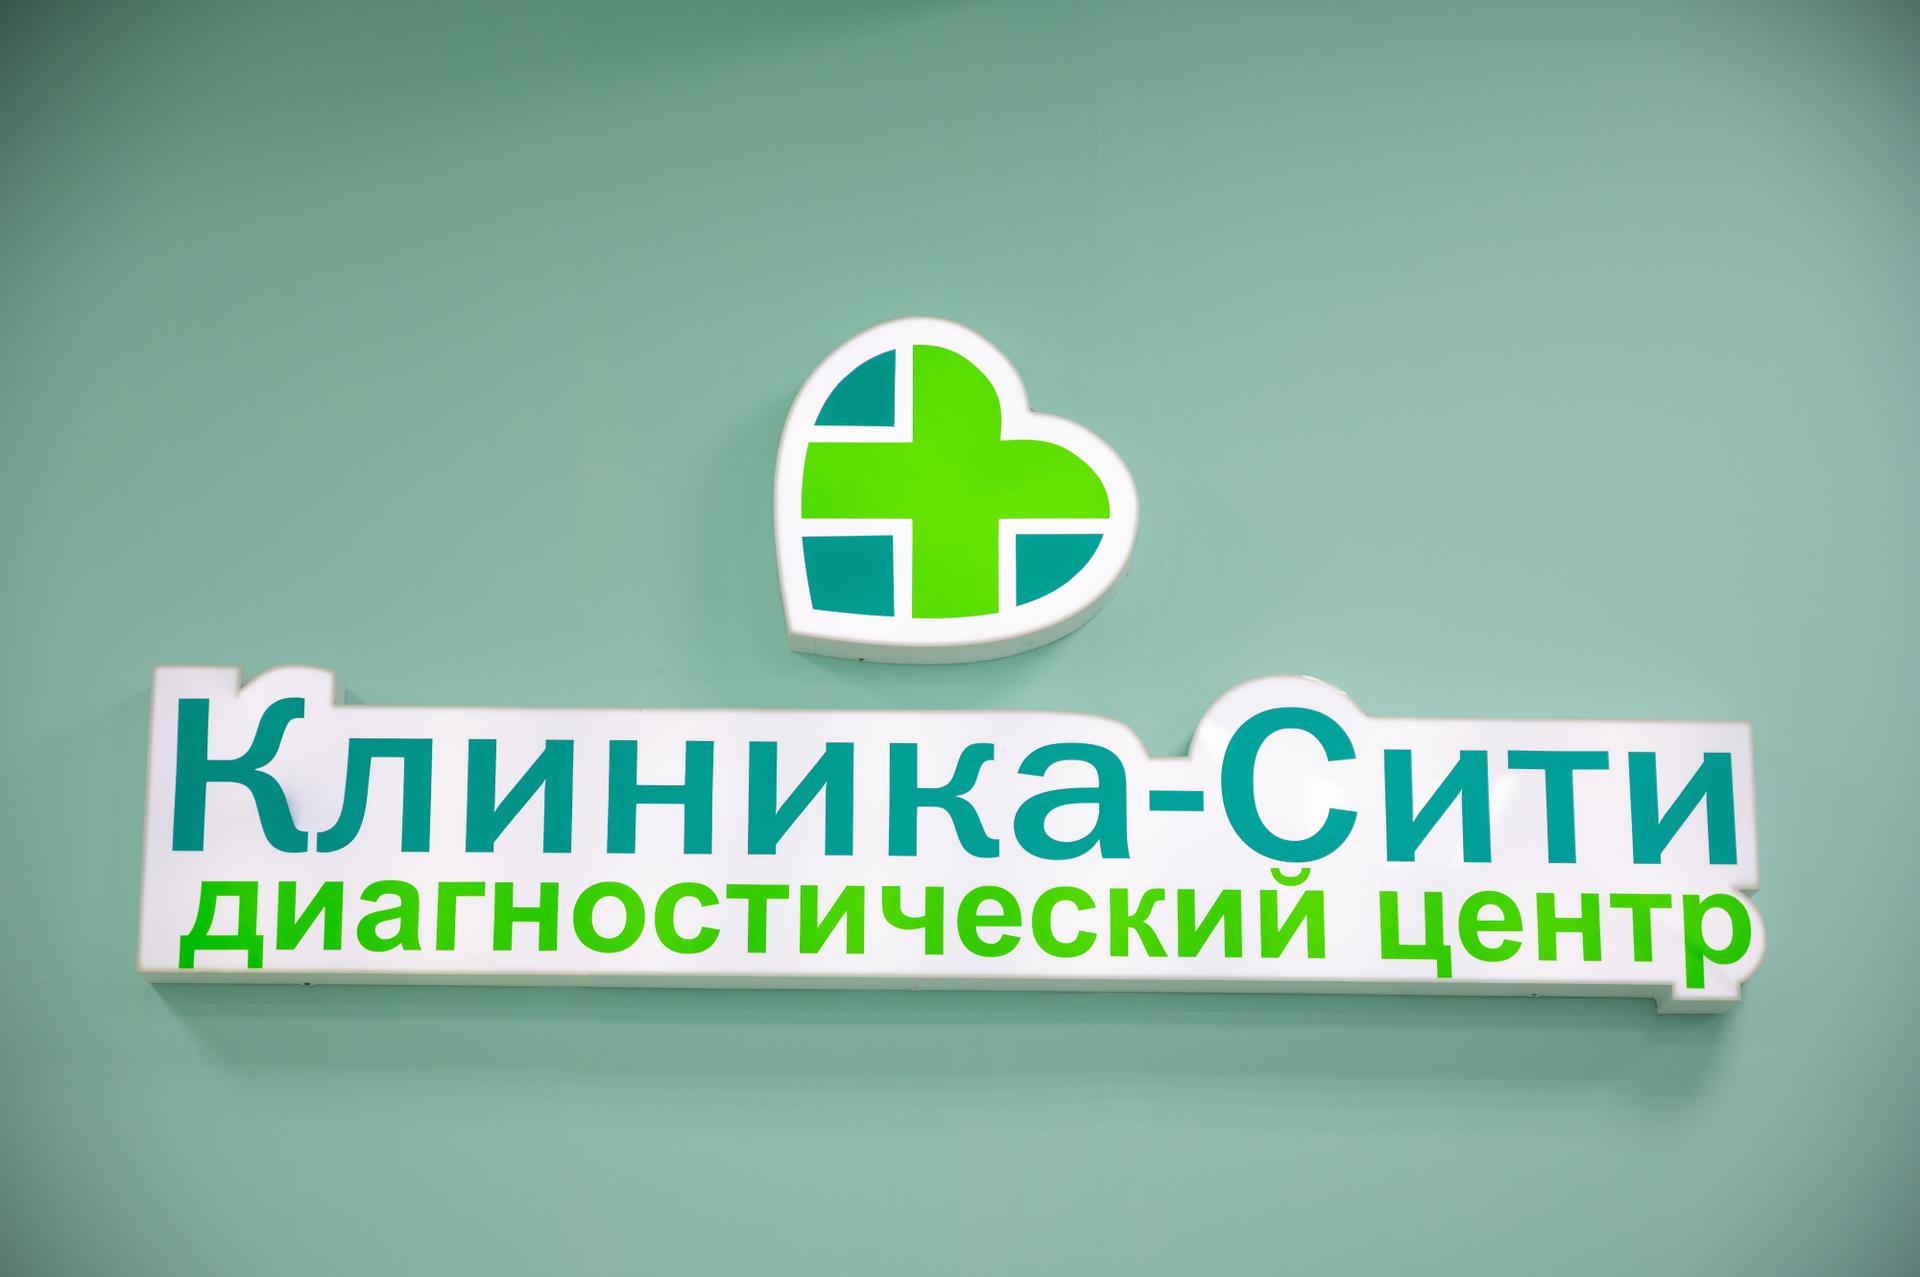 7 поликлиника ставрополь сайт